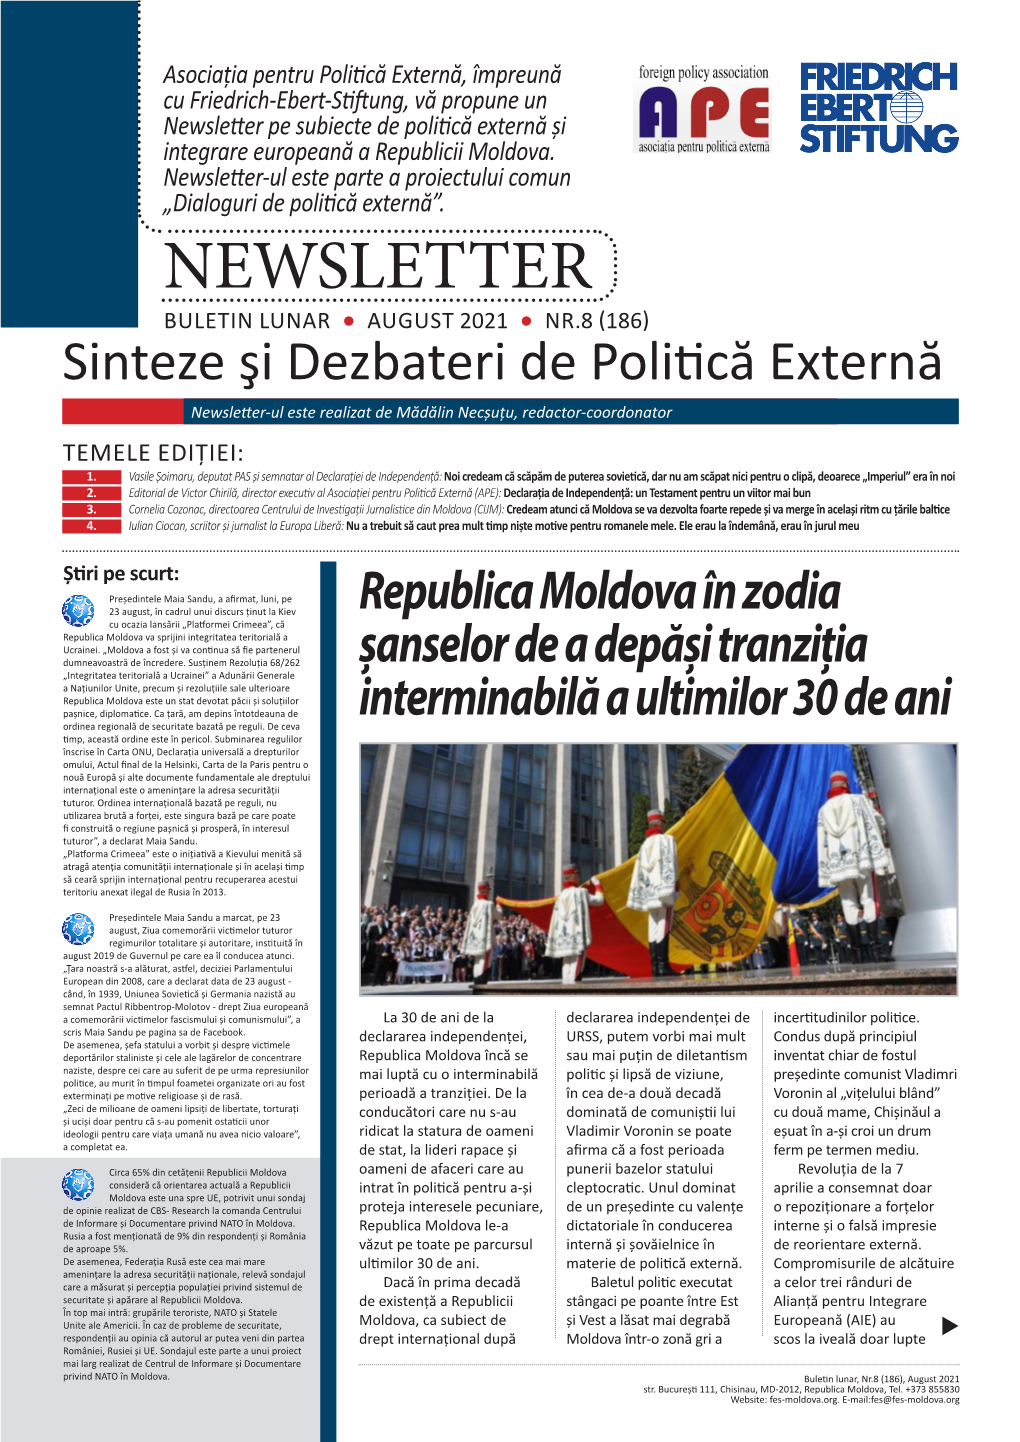 Newsletter Pe Subiecte De Politică Externă Și Integrare Europeană a Republicii Moldova